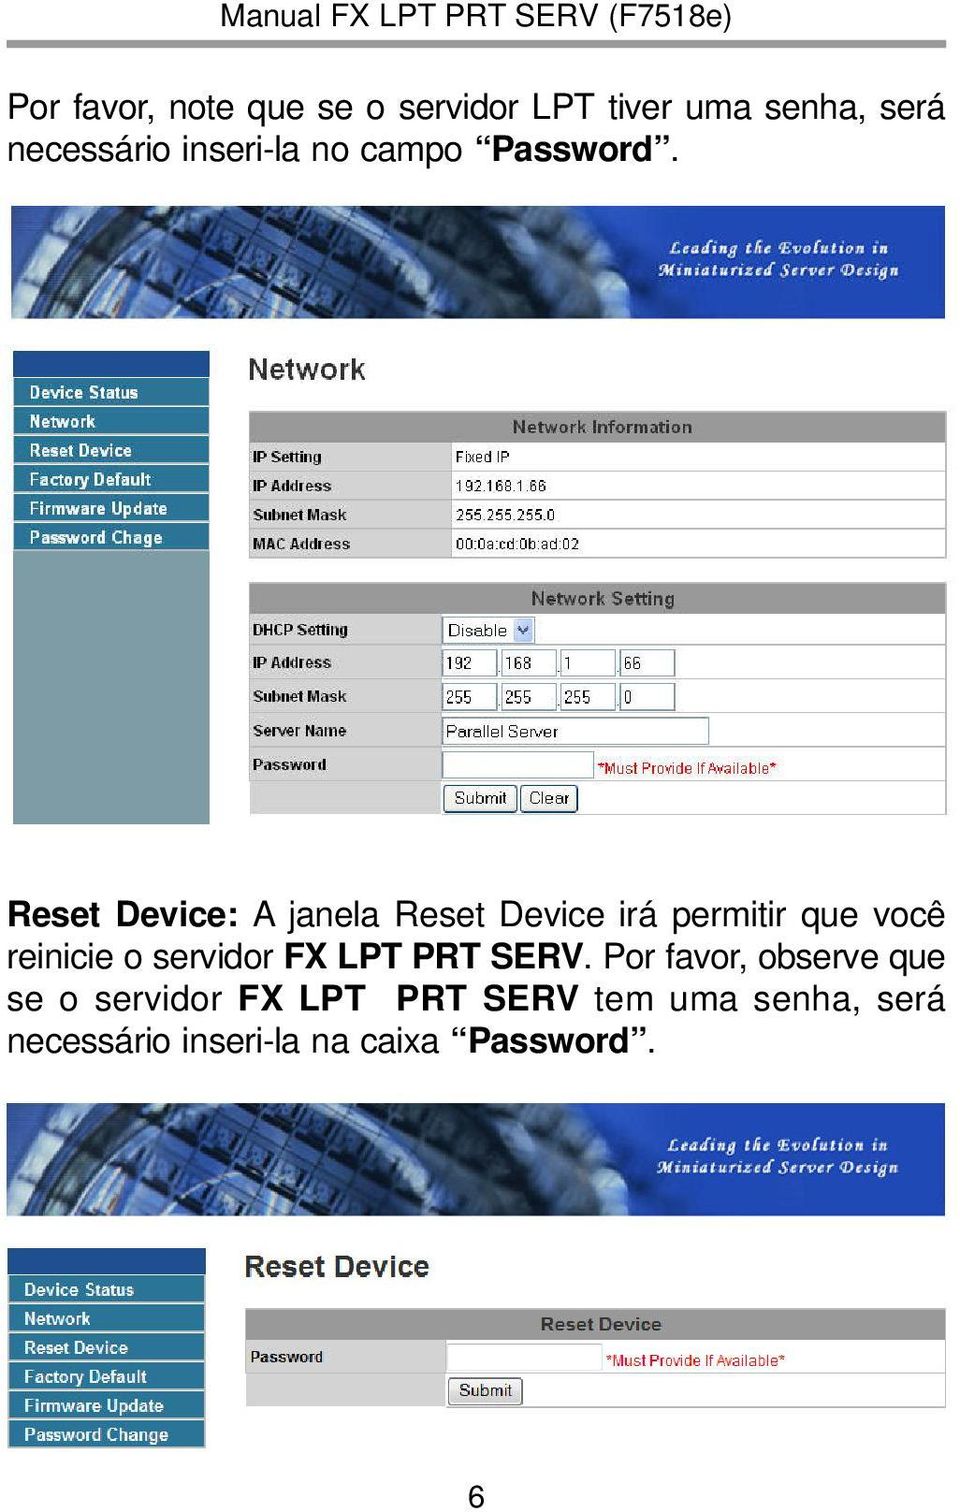 Reset Device: A janela Reset Device irá permitir que você reinicie o servidor